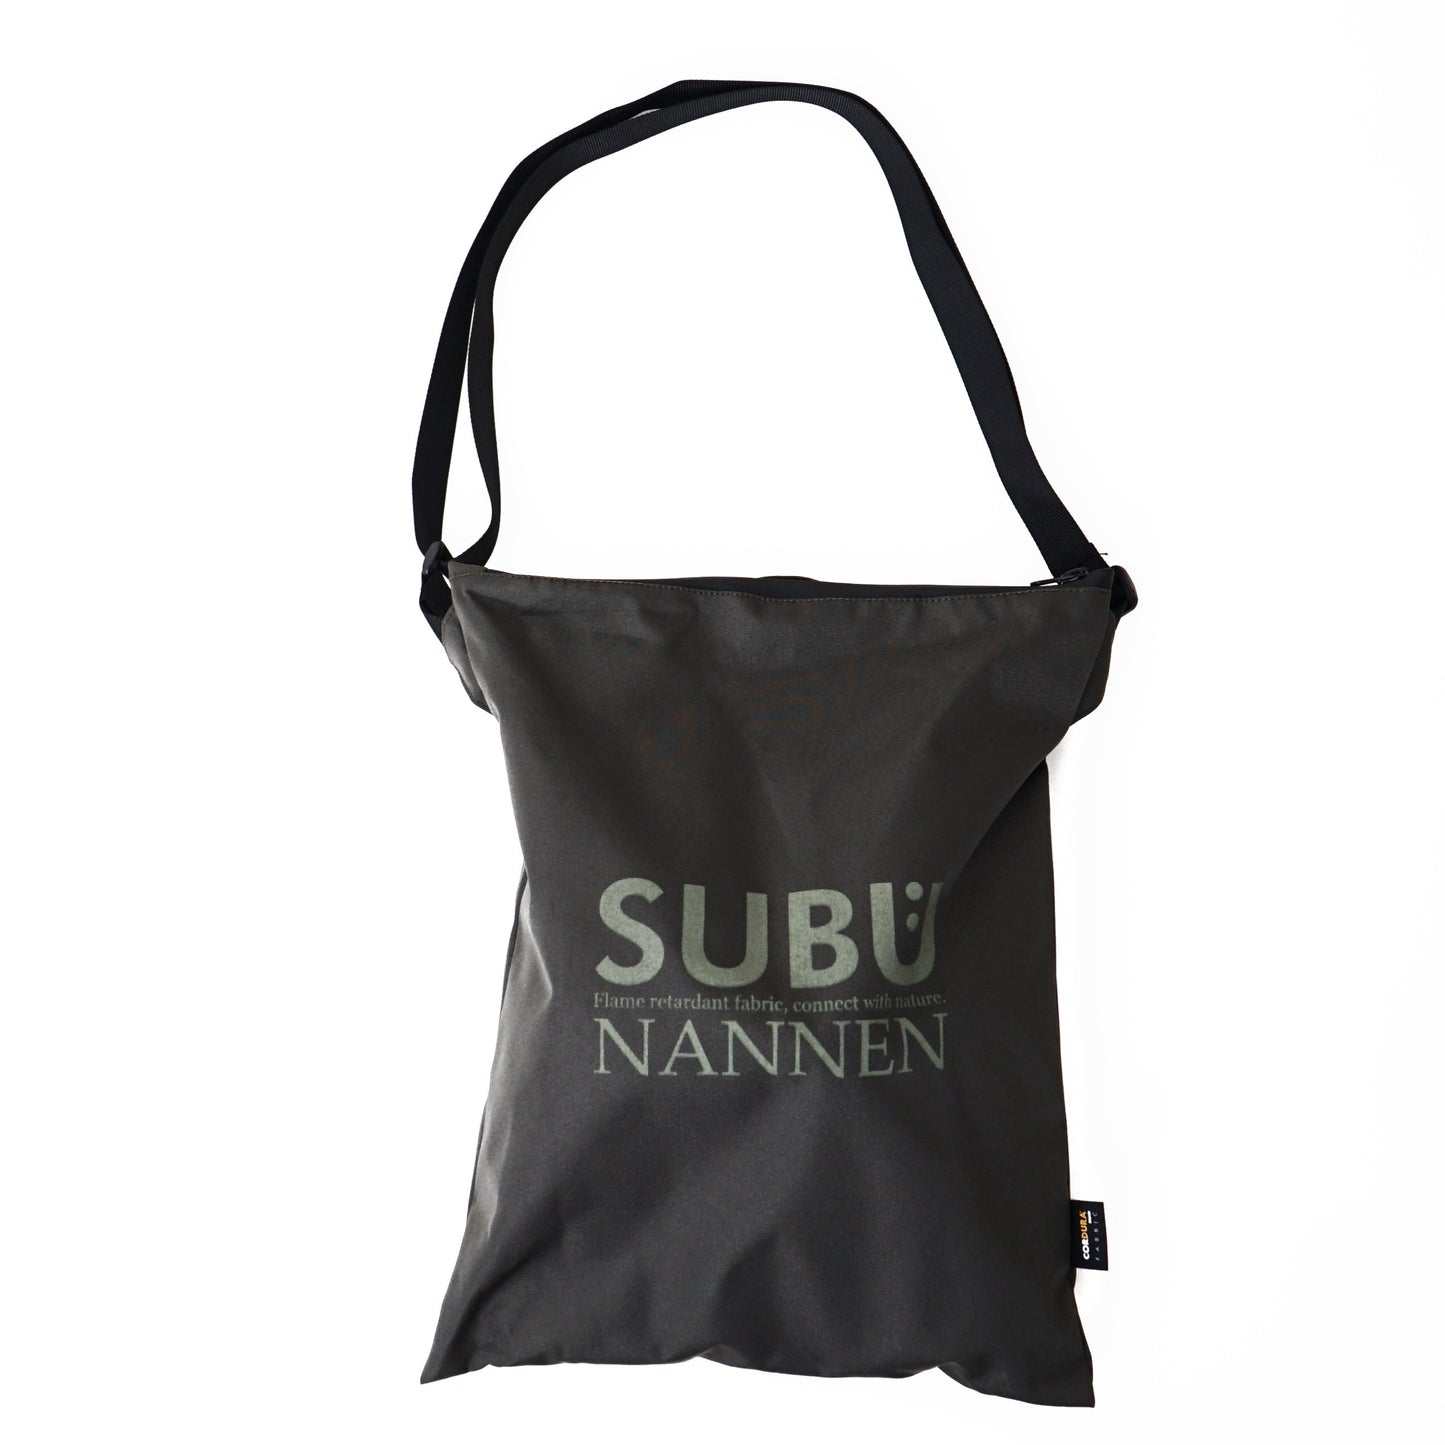 SUBU - Wintersandale - Nannen